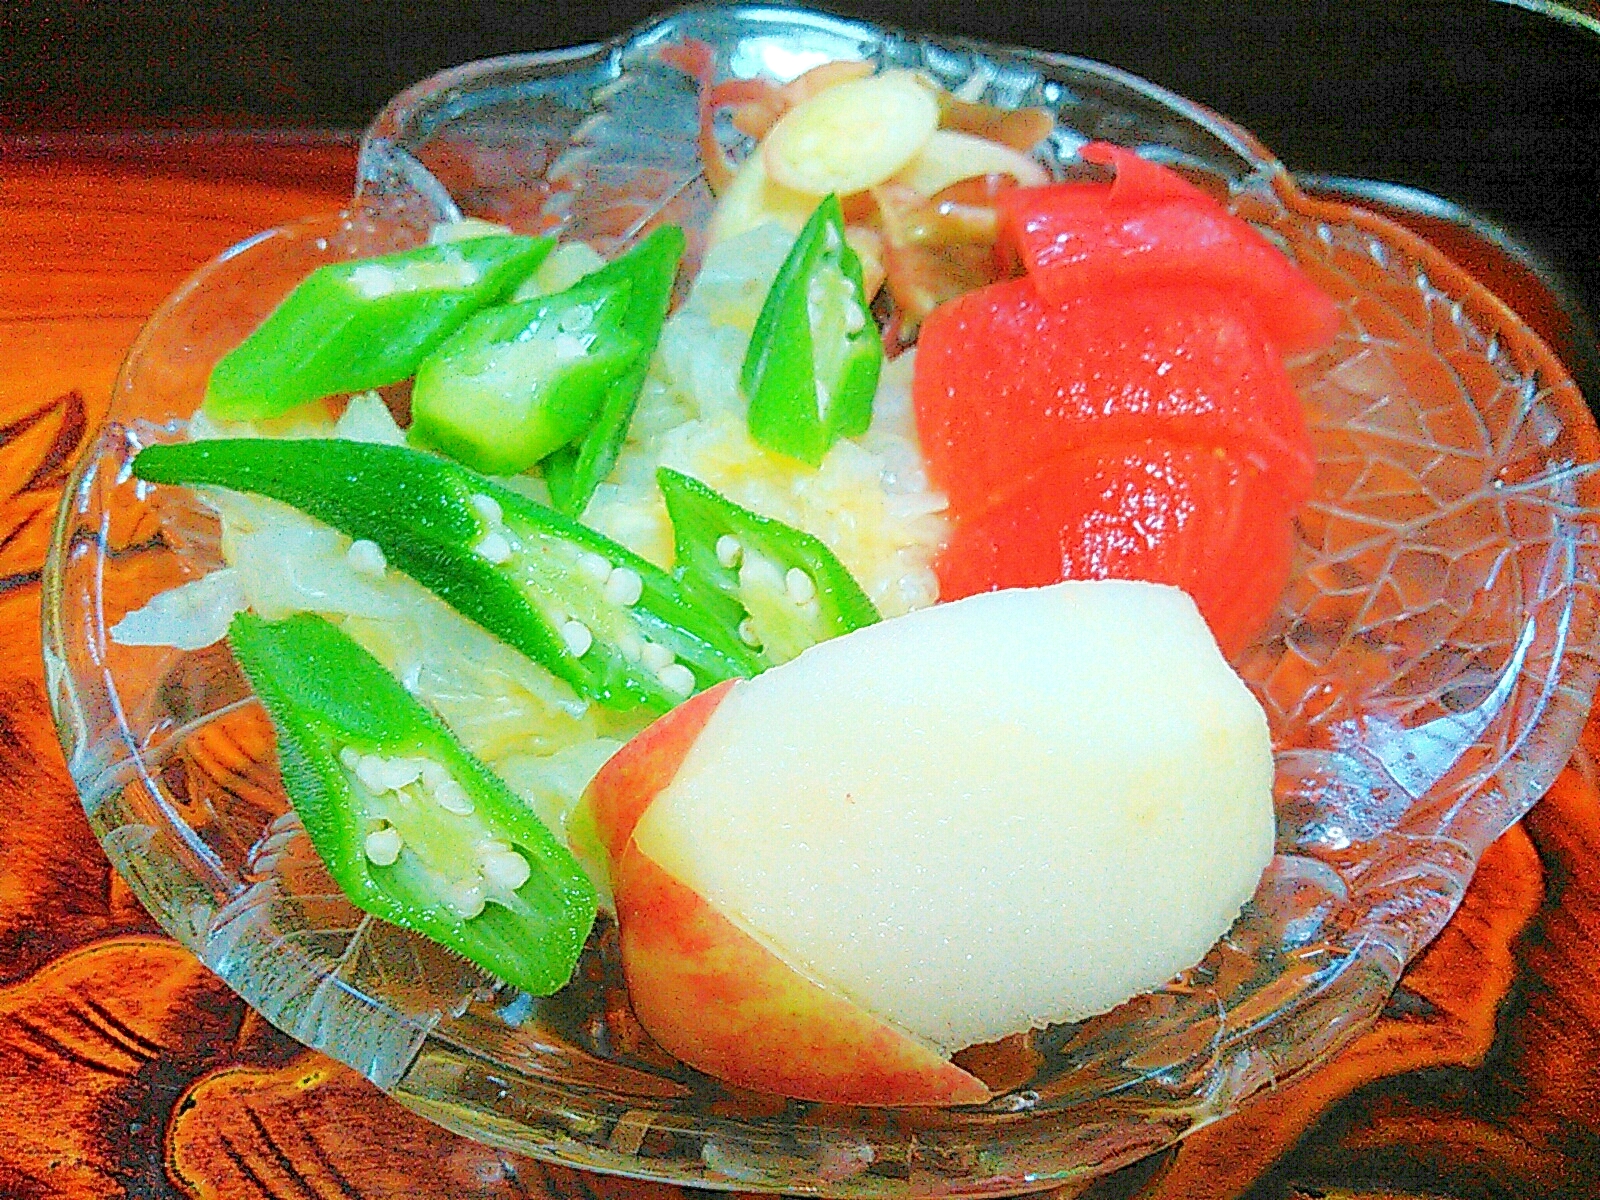 キャベツ&オクラ&トマトりんごサラダ